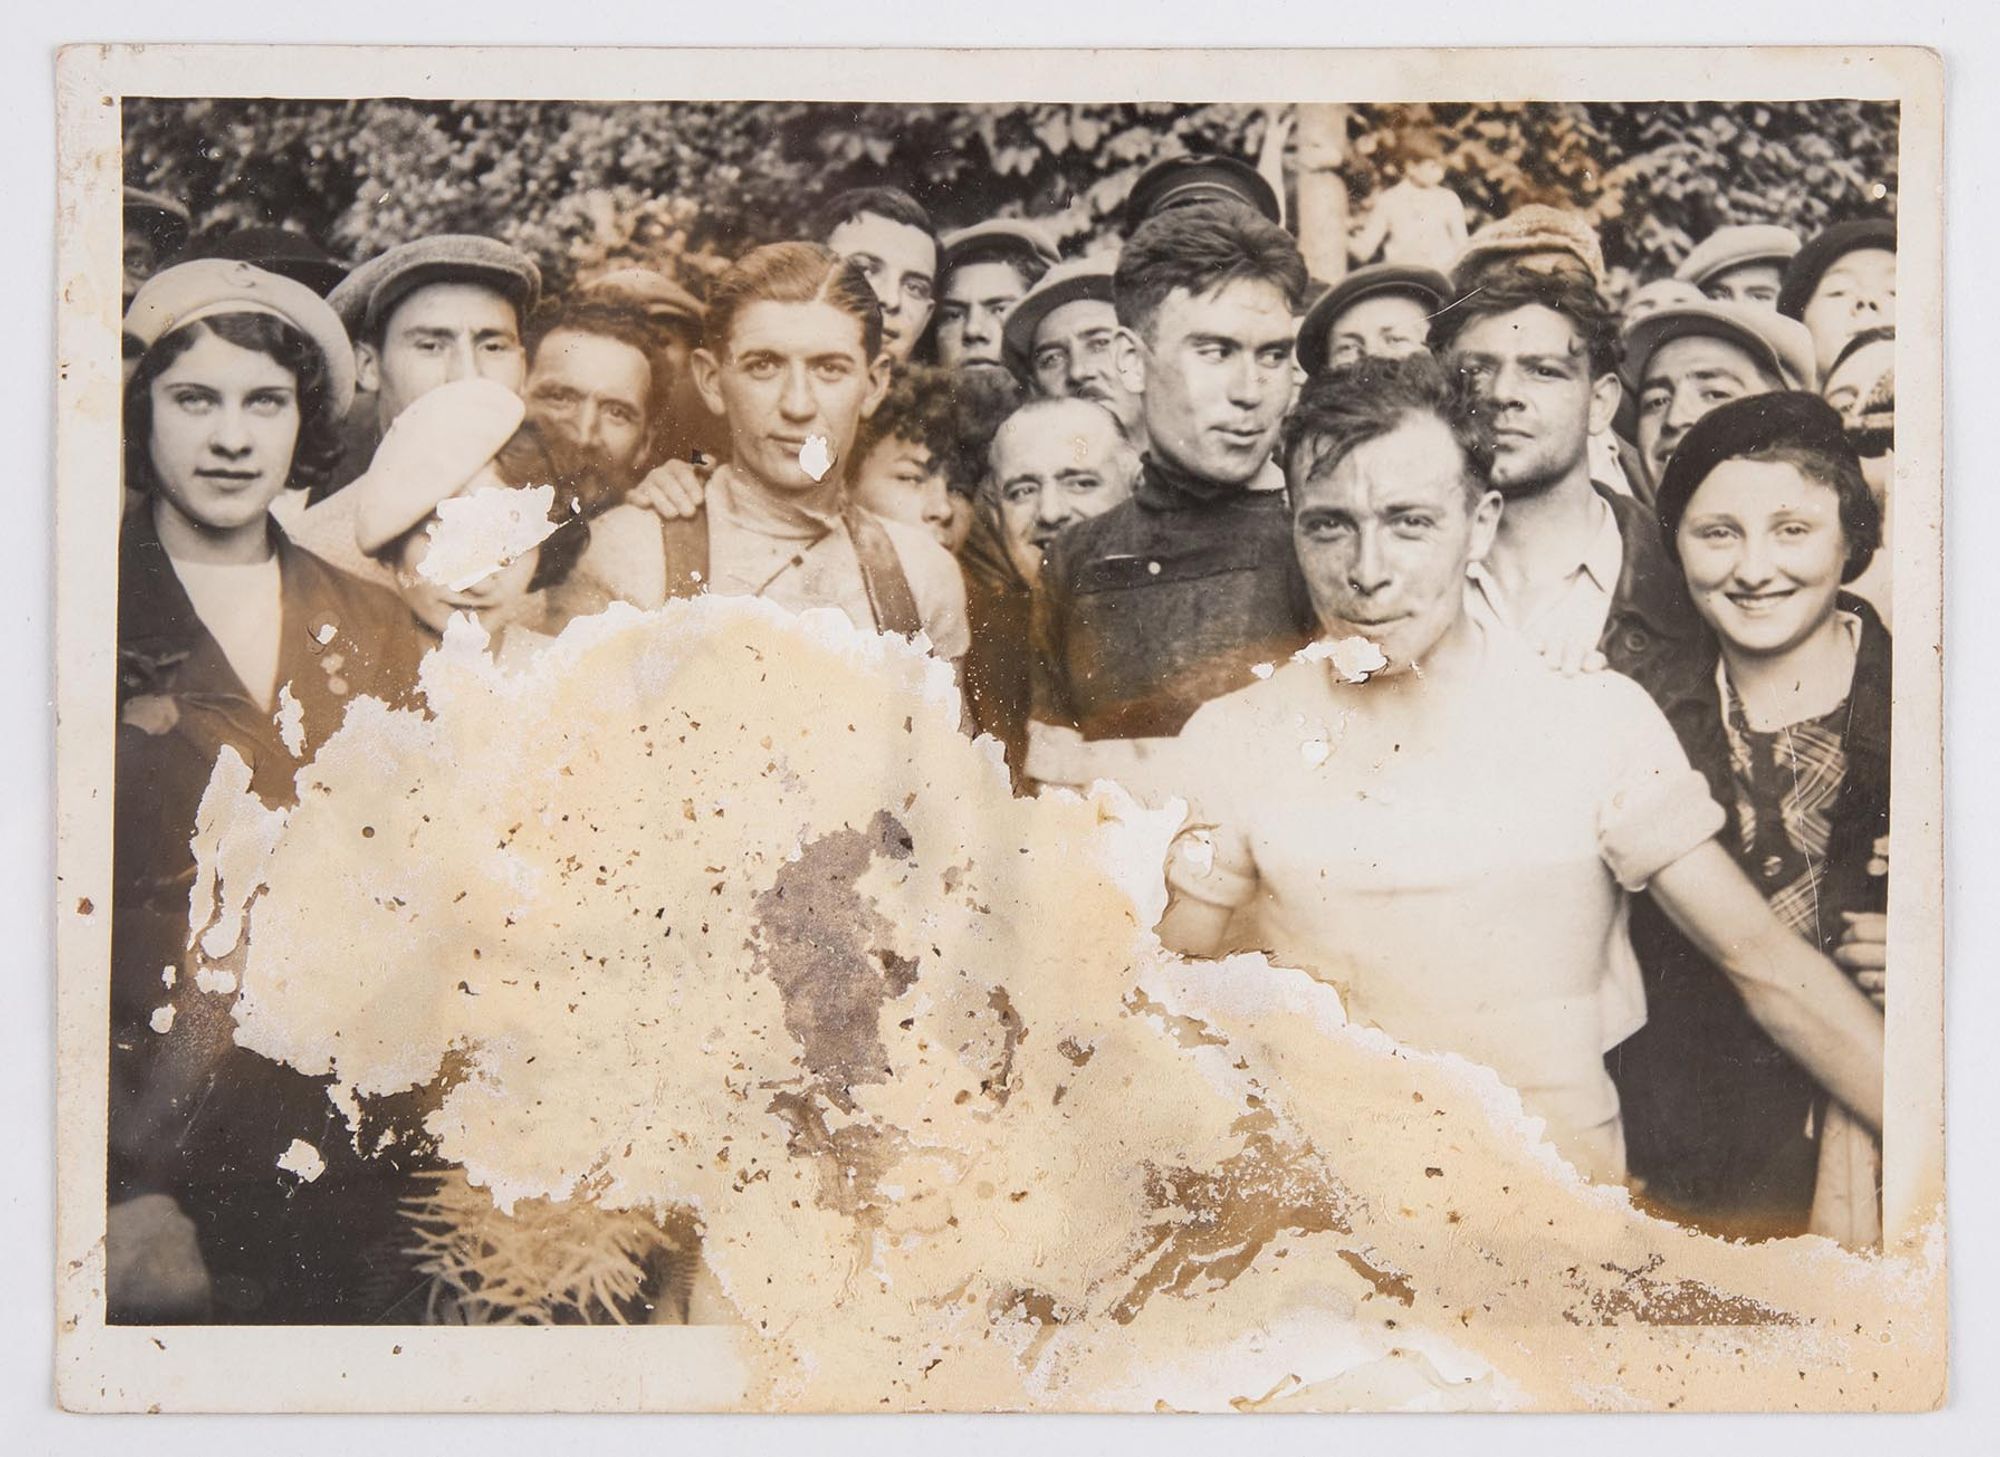 3 juin 1934. Prix du Bon-Séjour. Photographie des vainqueurs : J. Krubs, premier, entouré de Simmonet, deuxième, et Canparo, troisième, au milieu des spectateurs.